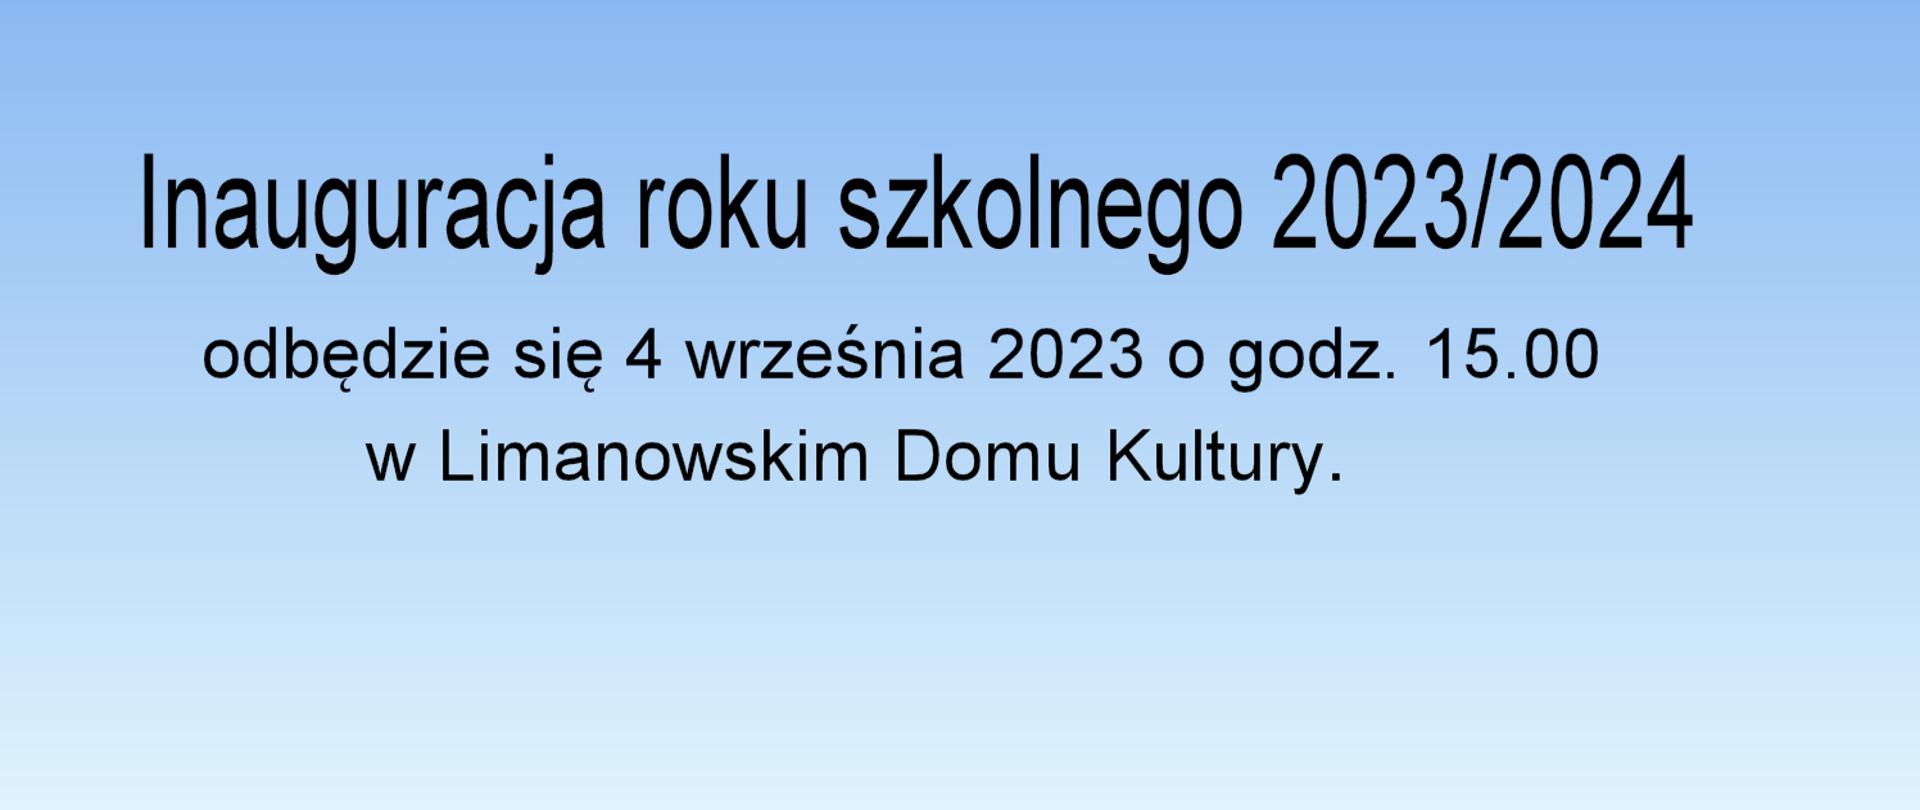 Tekst na niebieskim tle Inauguracja roku szkolnego 2023/2024odbędzie się 4 września 2023 o godzinie piętnastej w Limanowskim Domu Kultury.